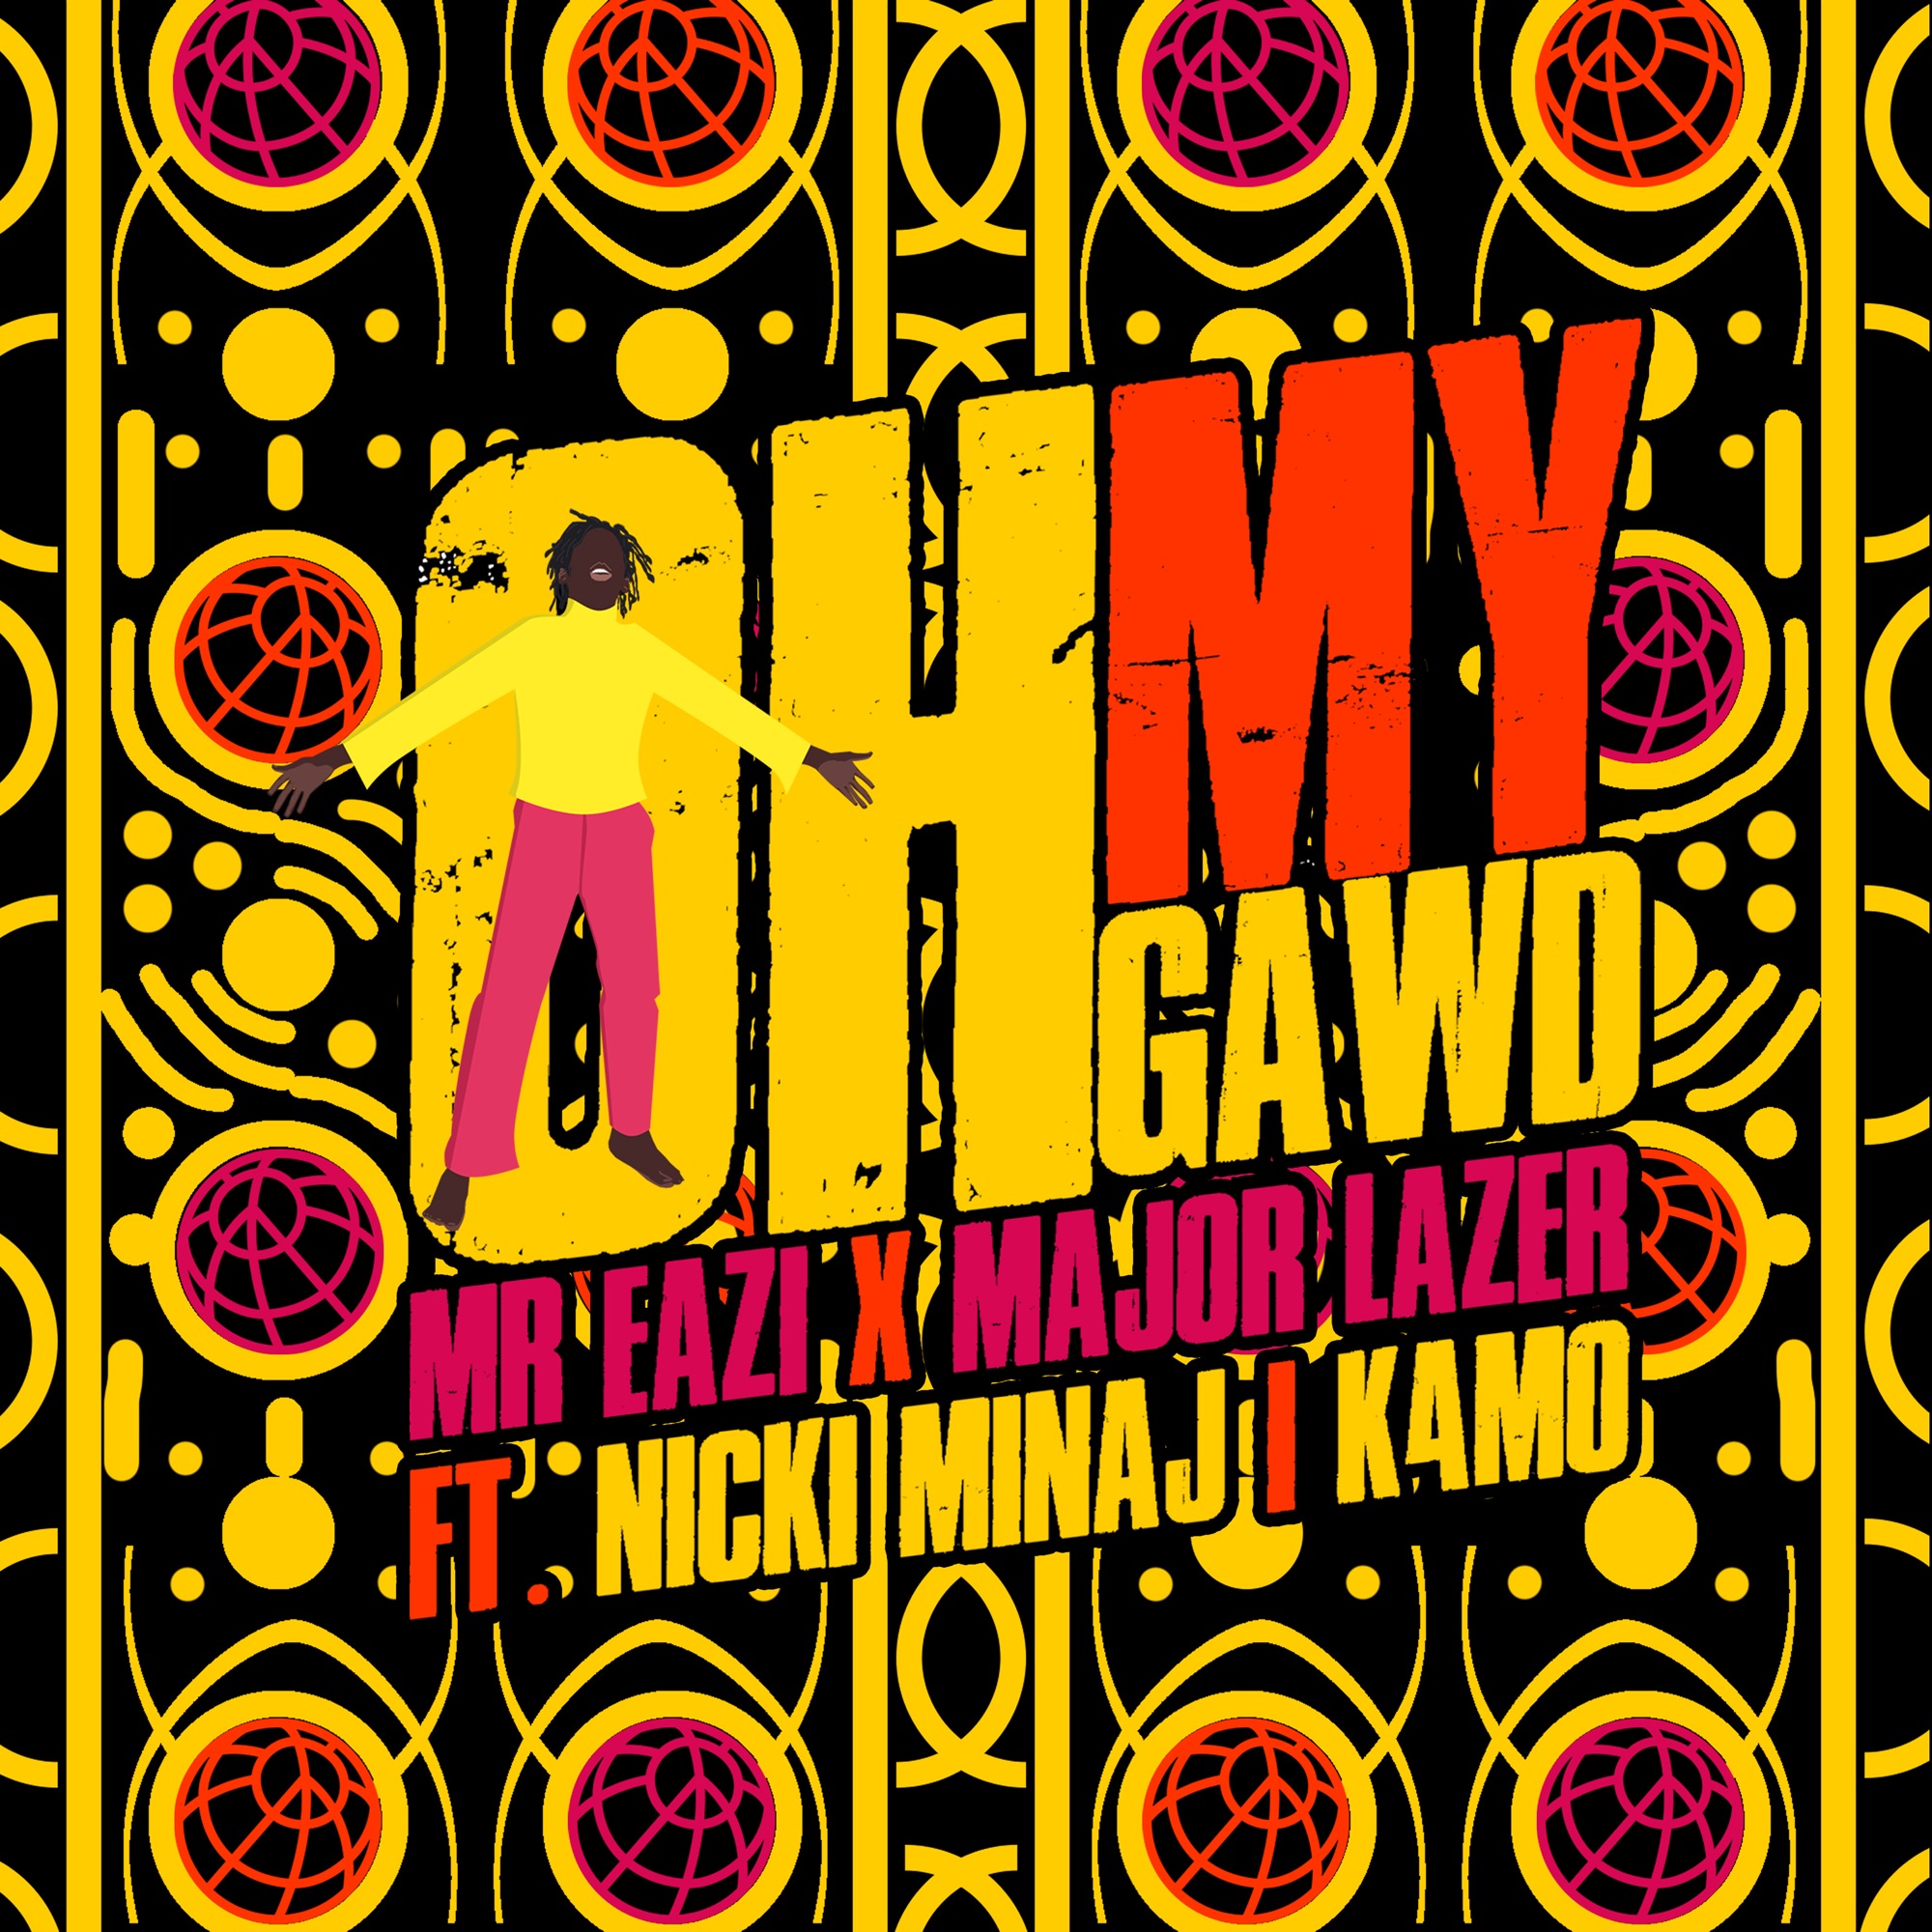 Mr Eazi & Major Lazer - Oh My Gawd (feat. Nicki Minaj & K4mo) - Single